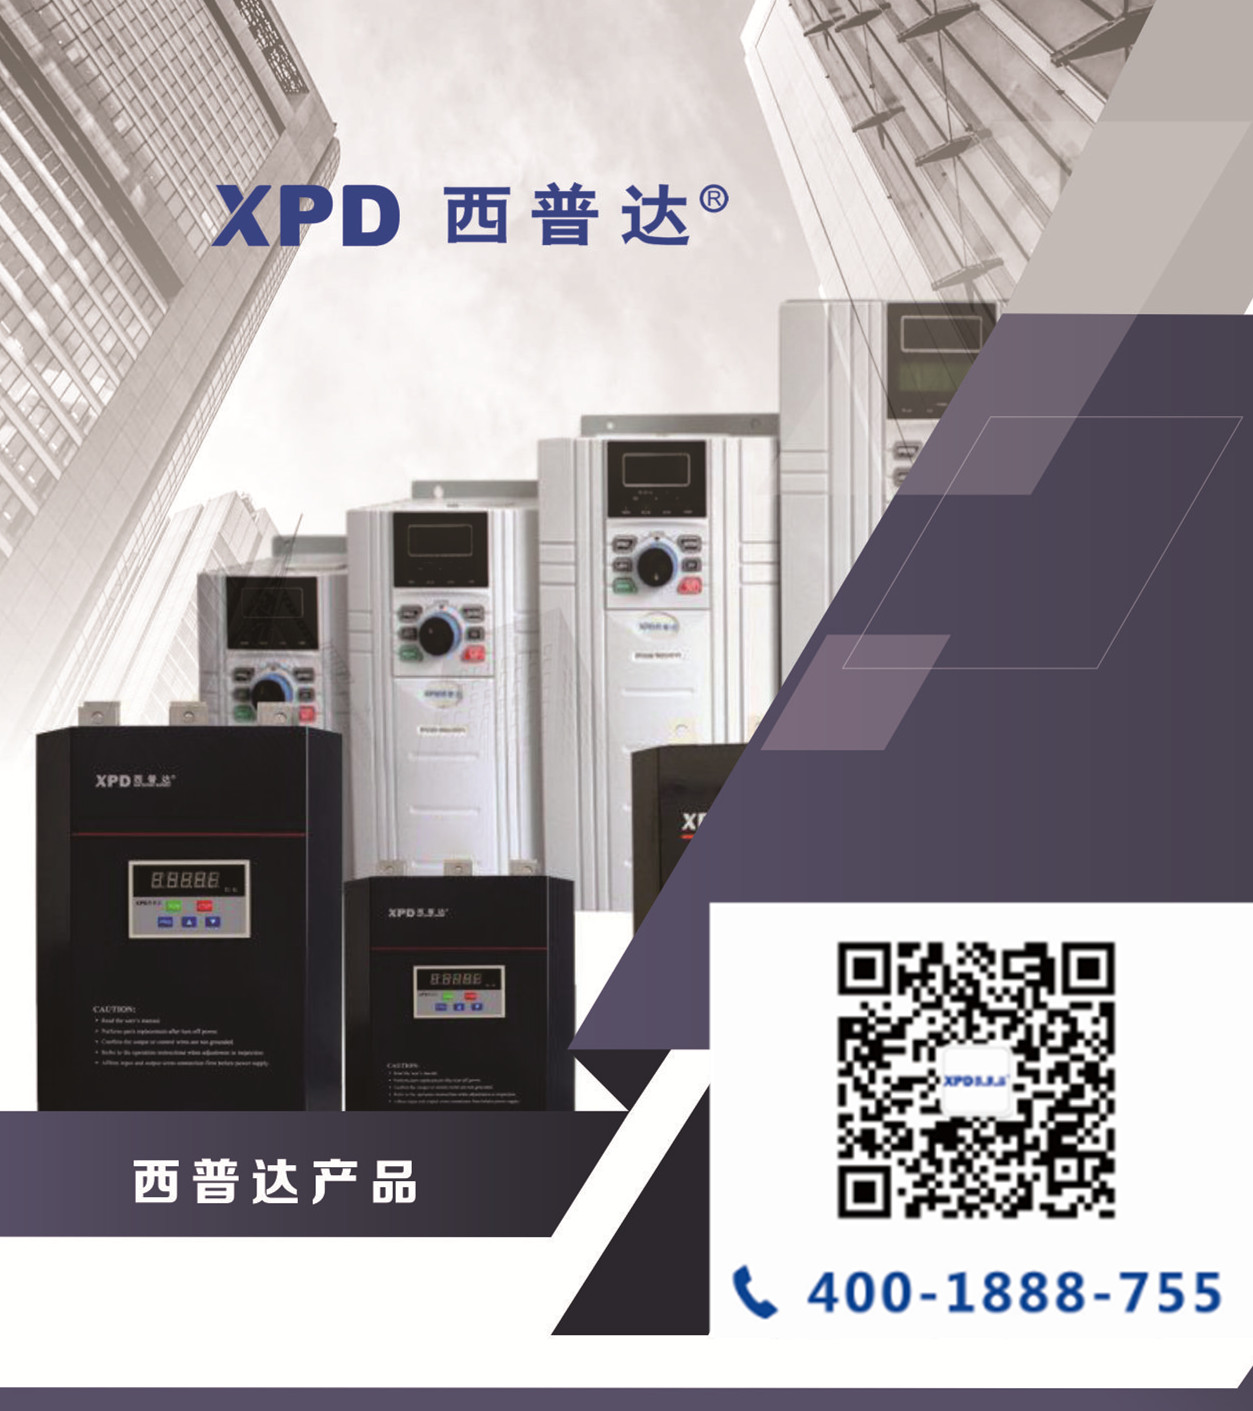 XPD系列H型高压软起动控制柜